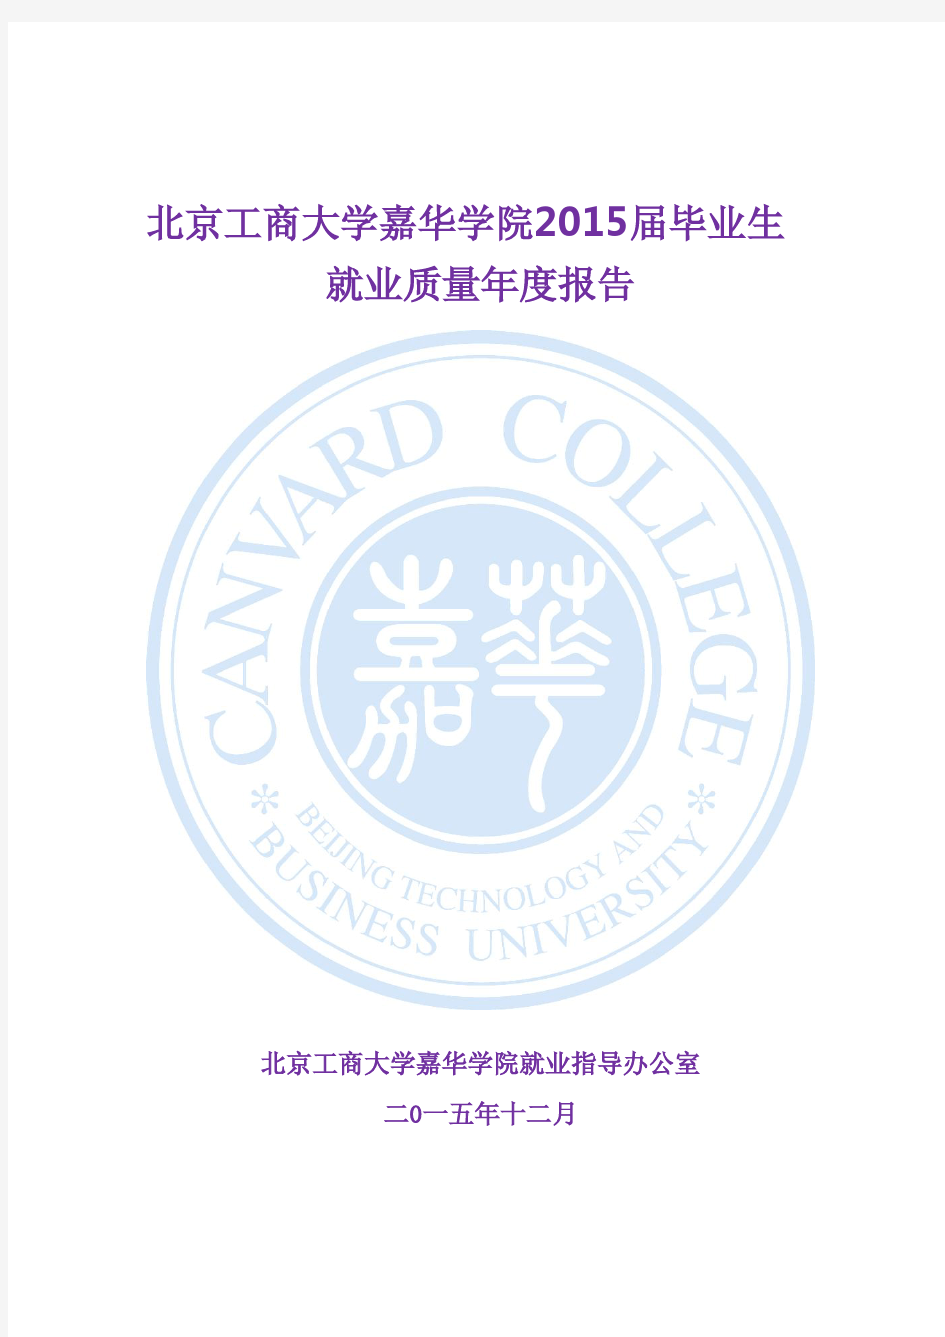 北京工商大学嘉华学院2015届毕业生就业质量年度报告